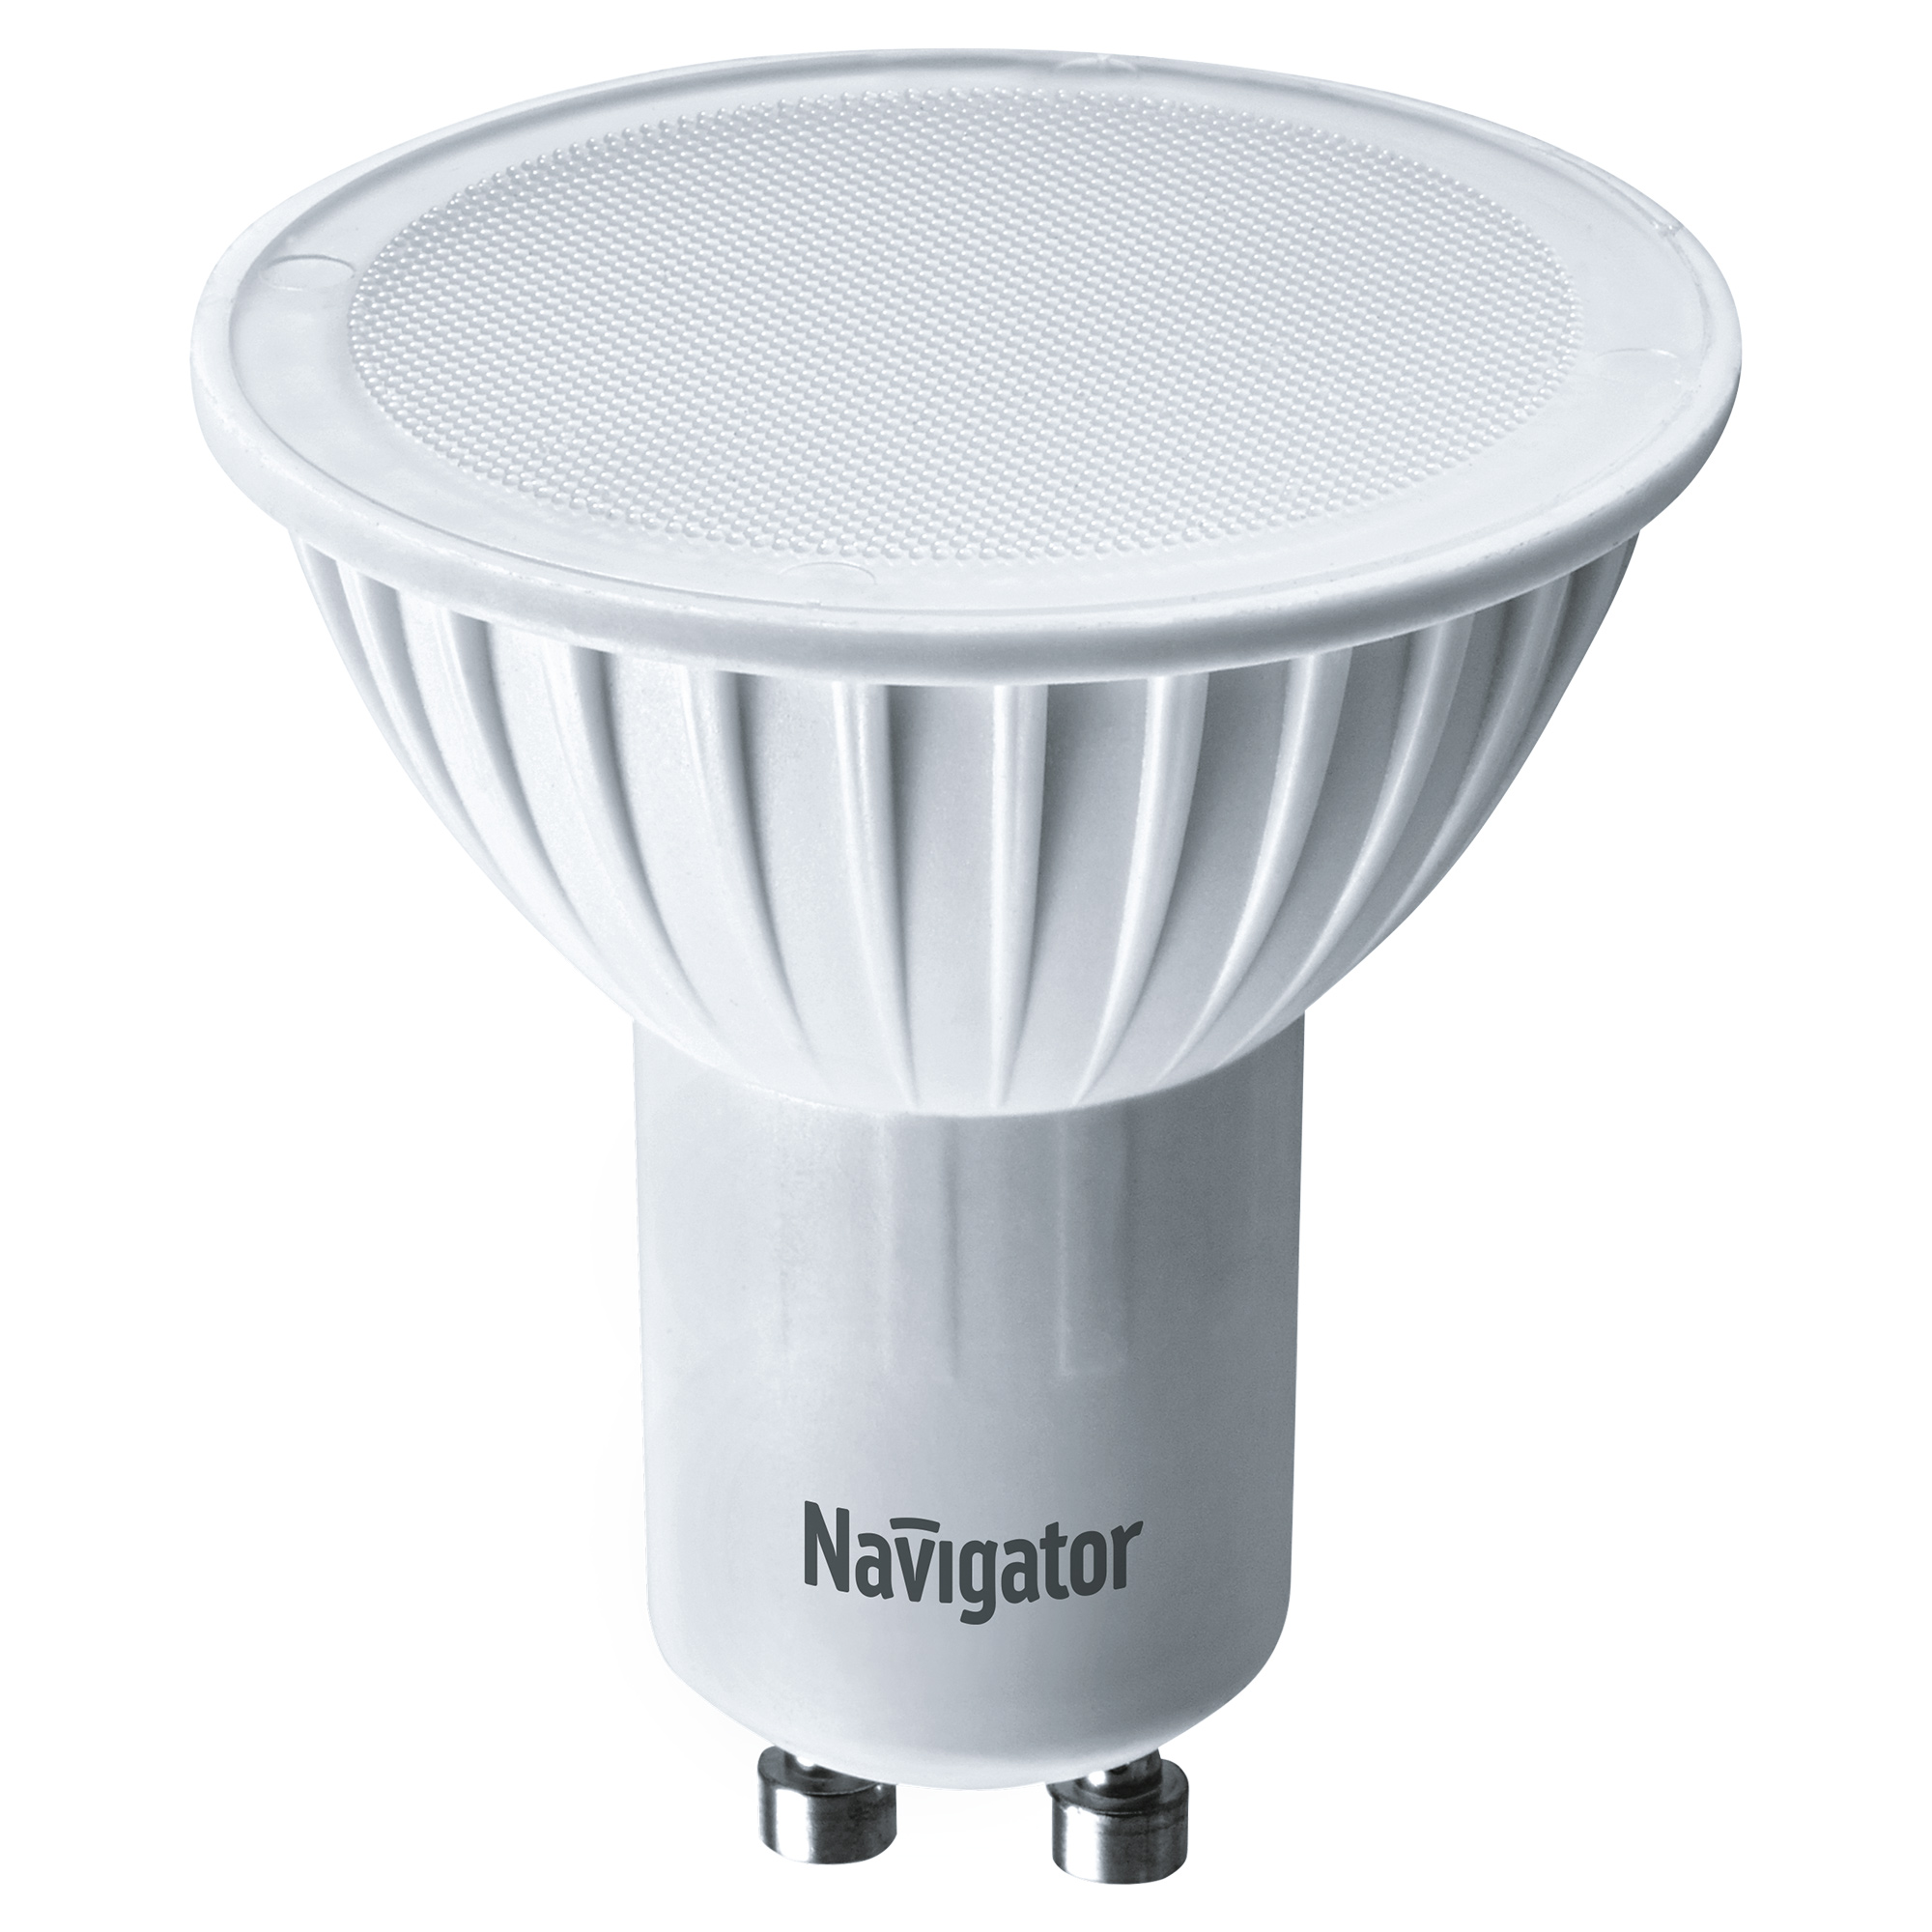 Лампа светодиодная Navigator PAR16 7Вт цоколь GU10 (теплый свет) лампа светодиодная navigator зеркальная r50 5вт цоколь e14 теплый свет